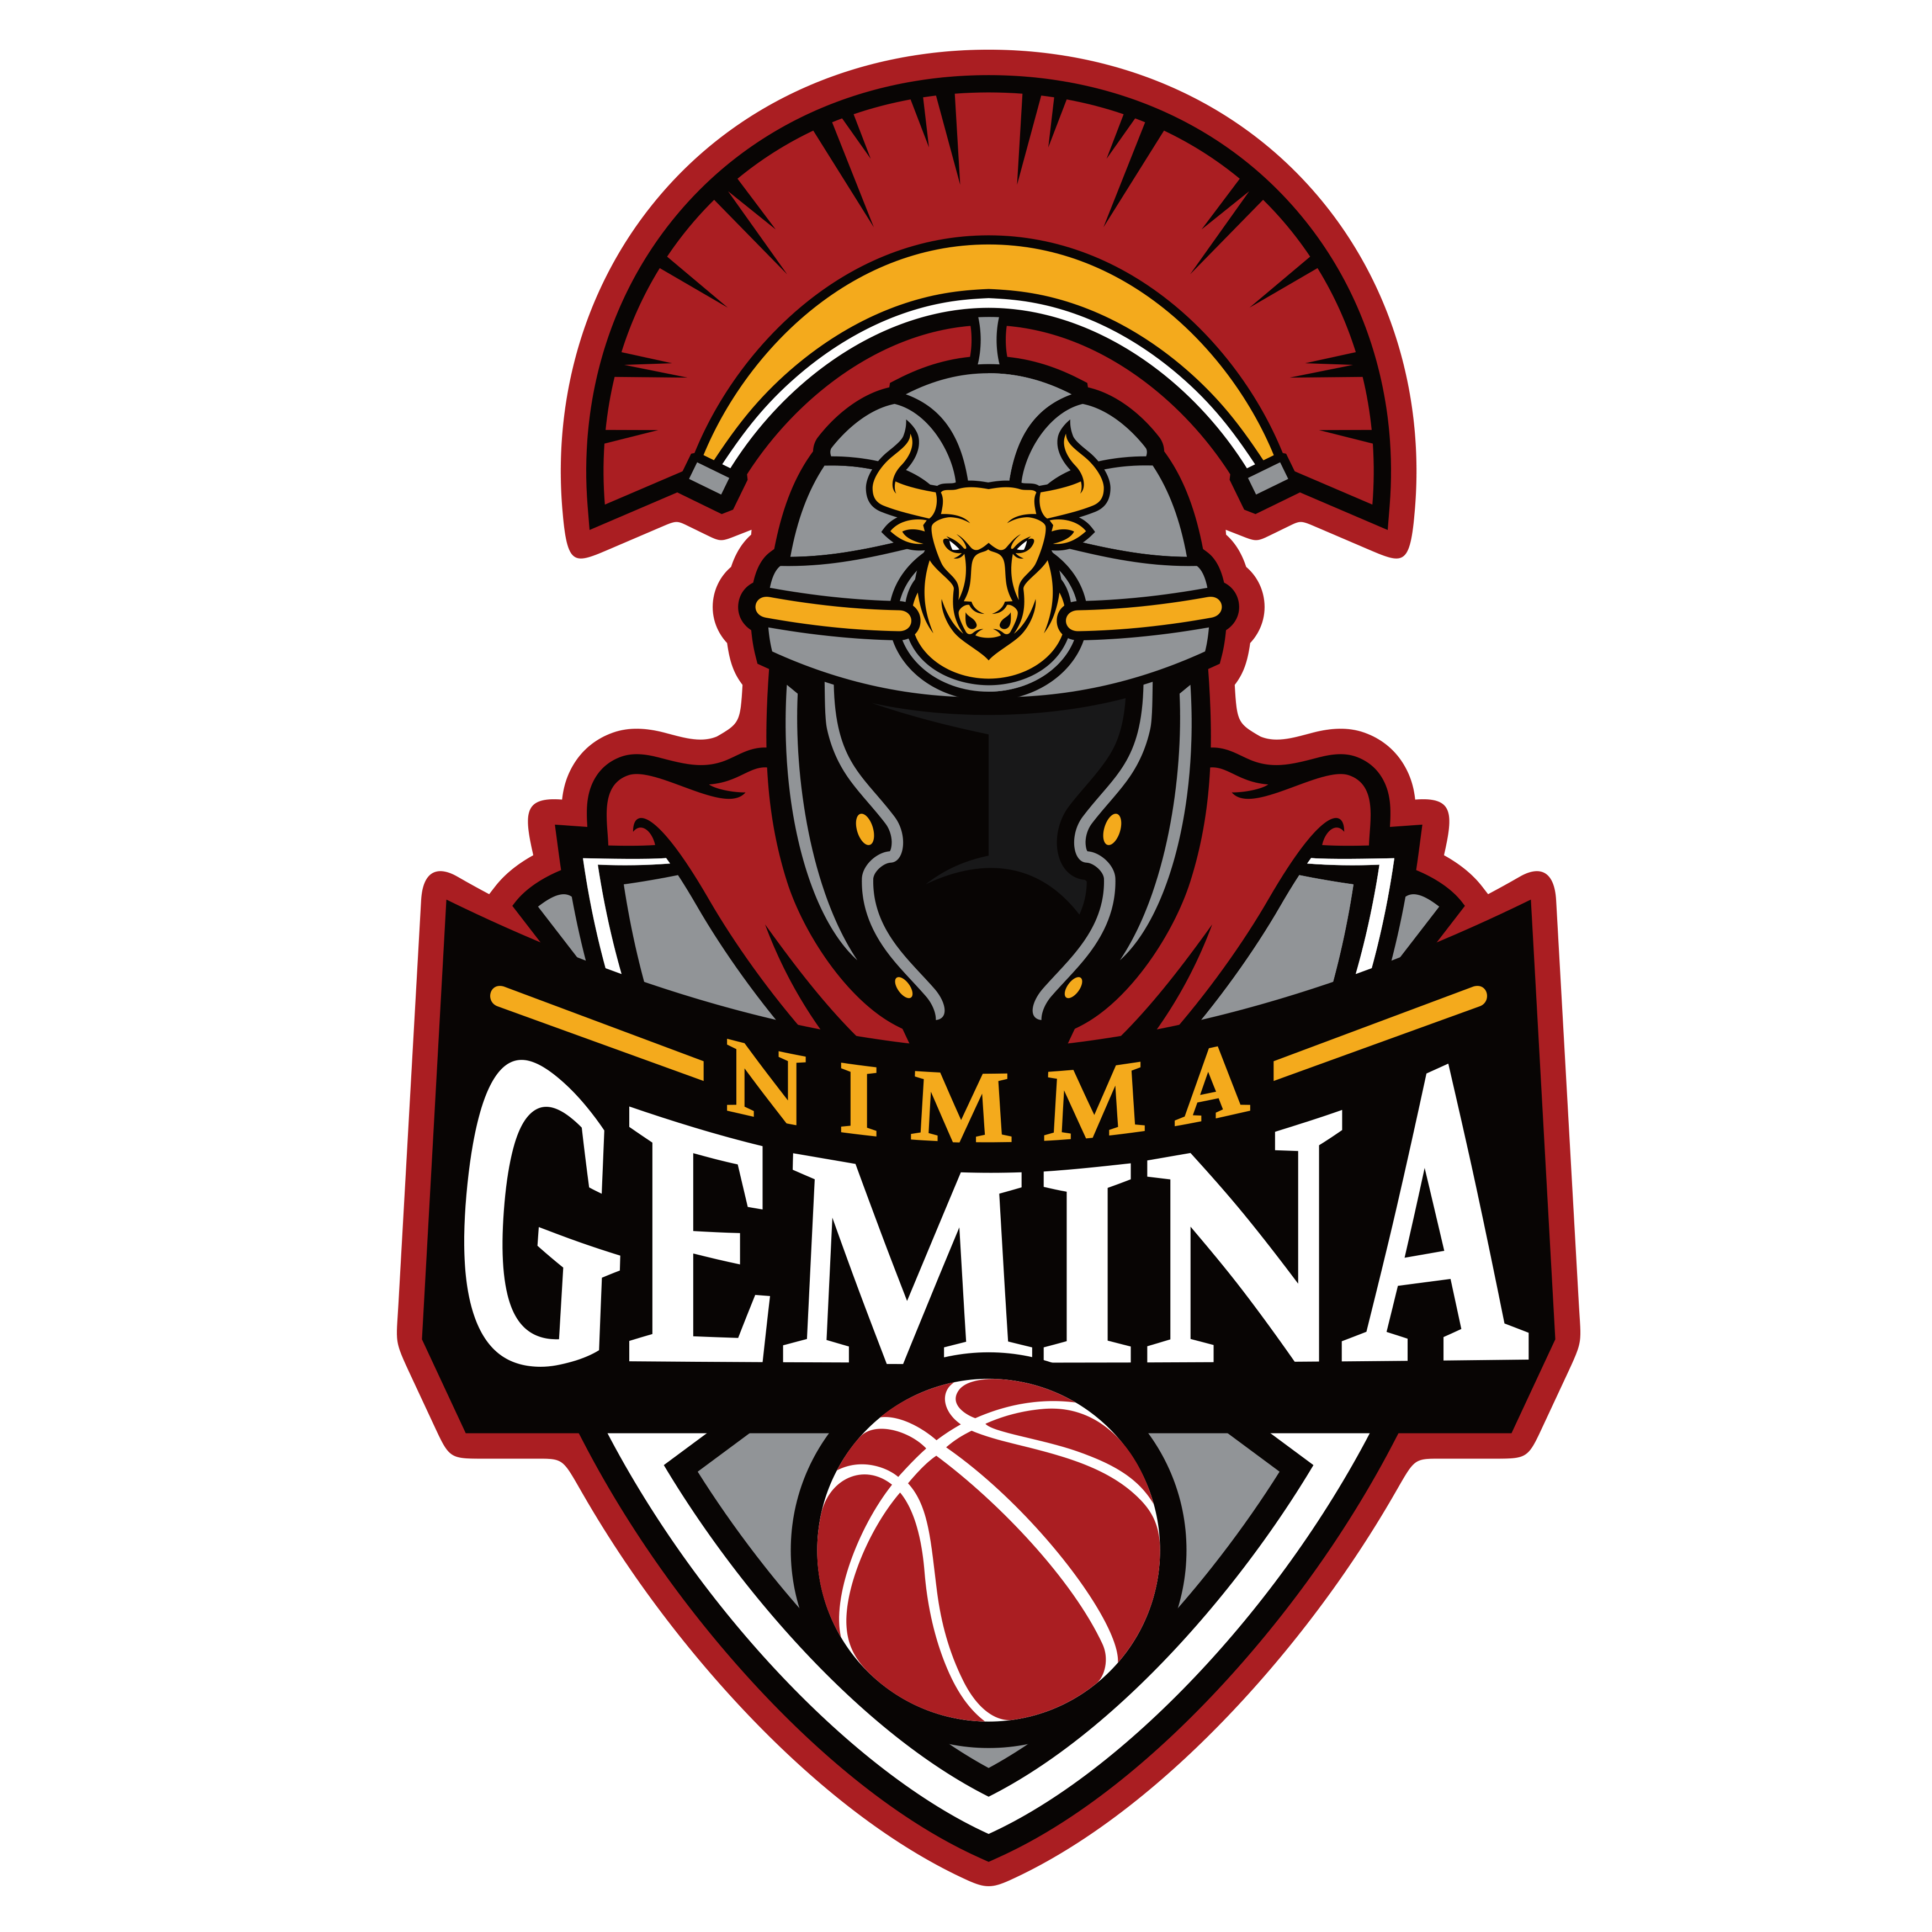 Nimma Gemina logo